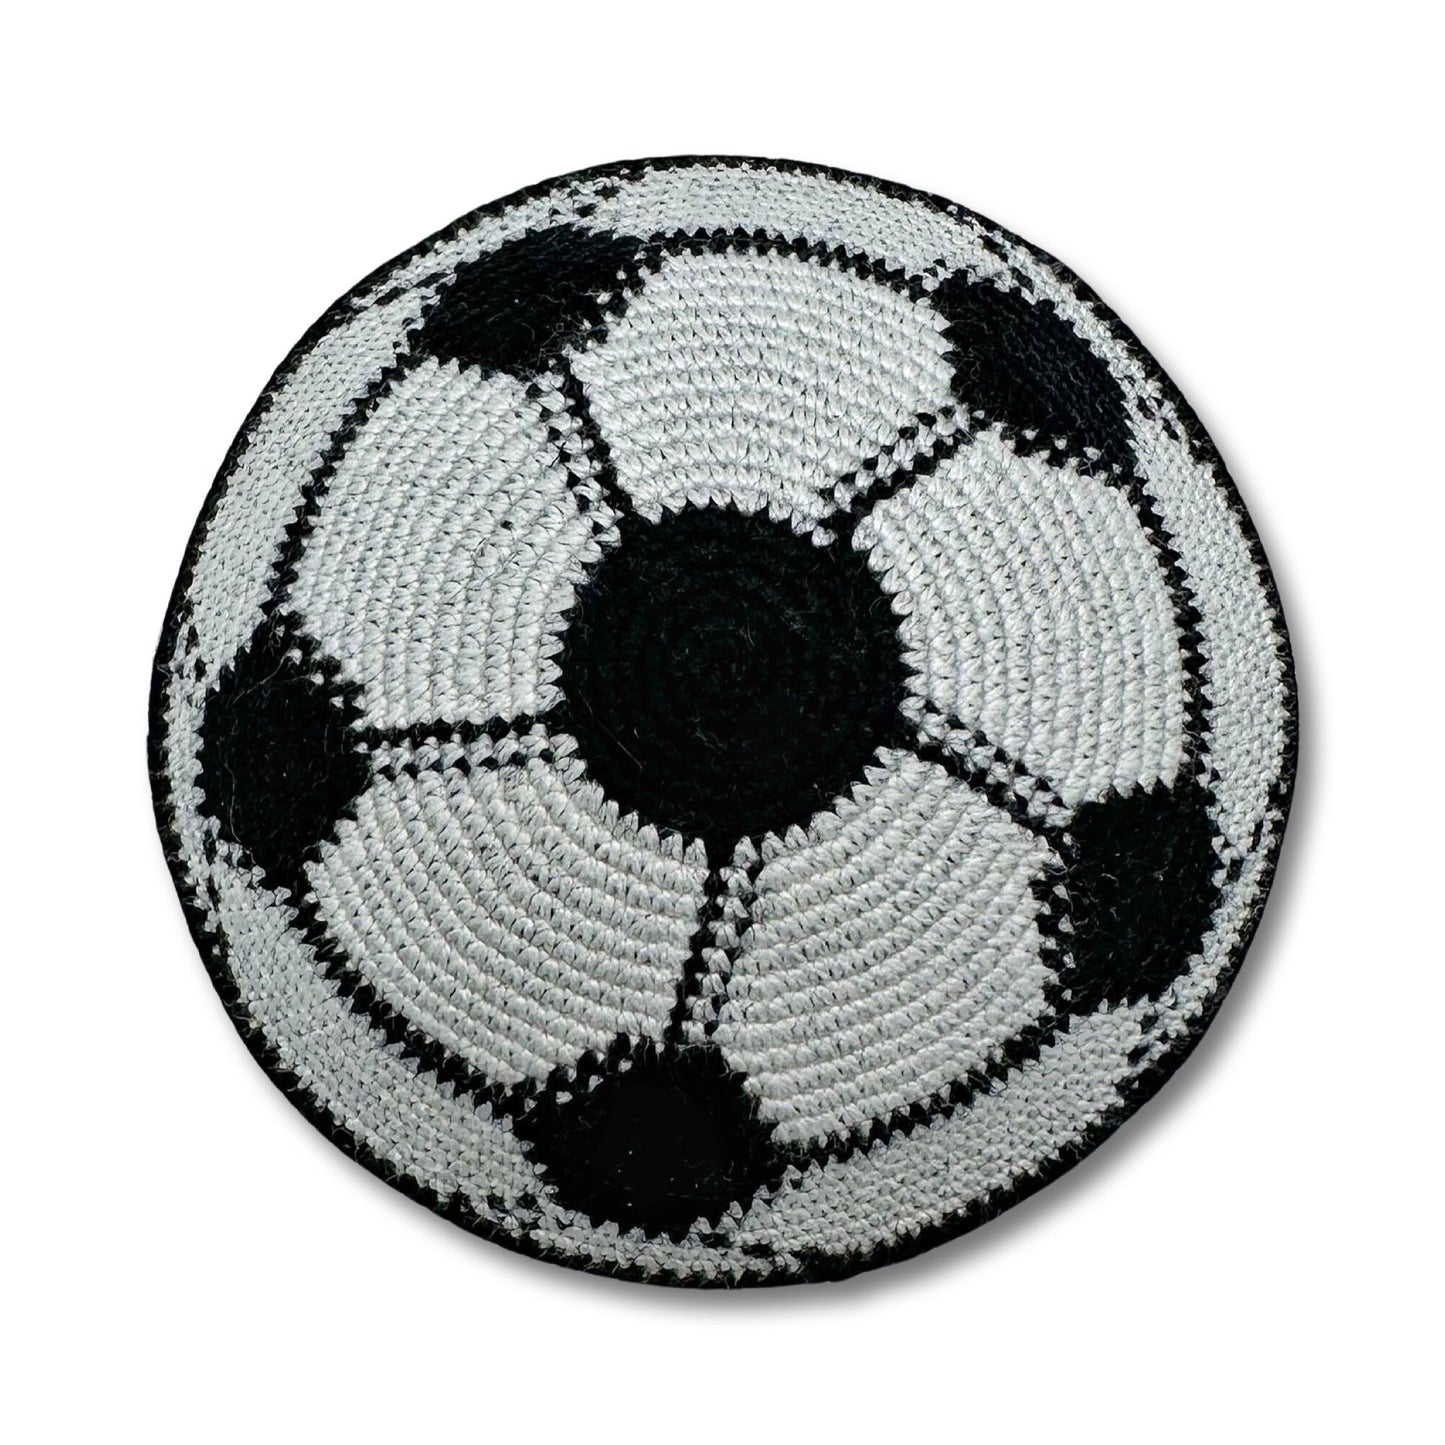 Soccer/Football Cotton Hand Made Kippah